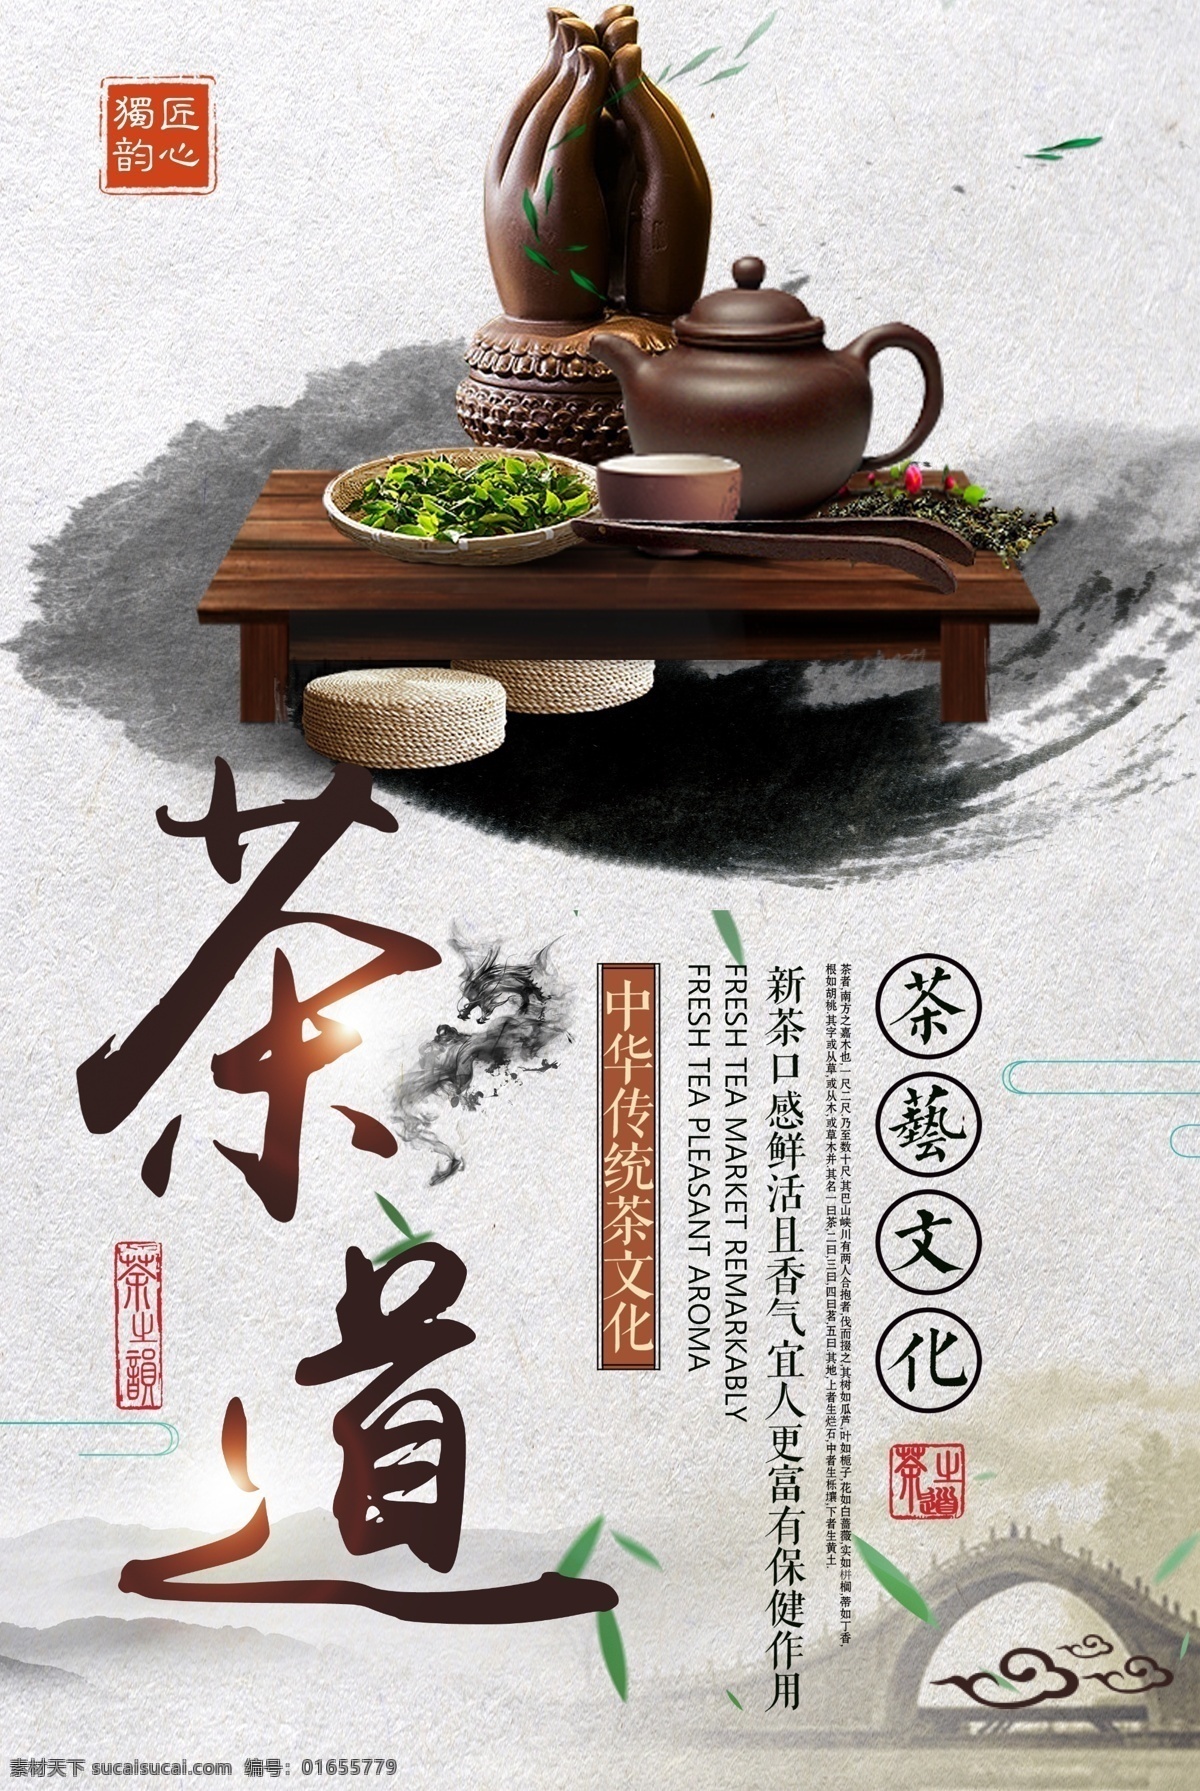 茶文化 茶文化海报 茶道文化 中华文化 传统文化 茶艺 茶道 传统茶文化 品茶文化 养生文化 分层